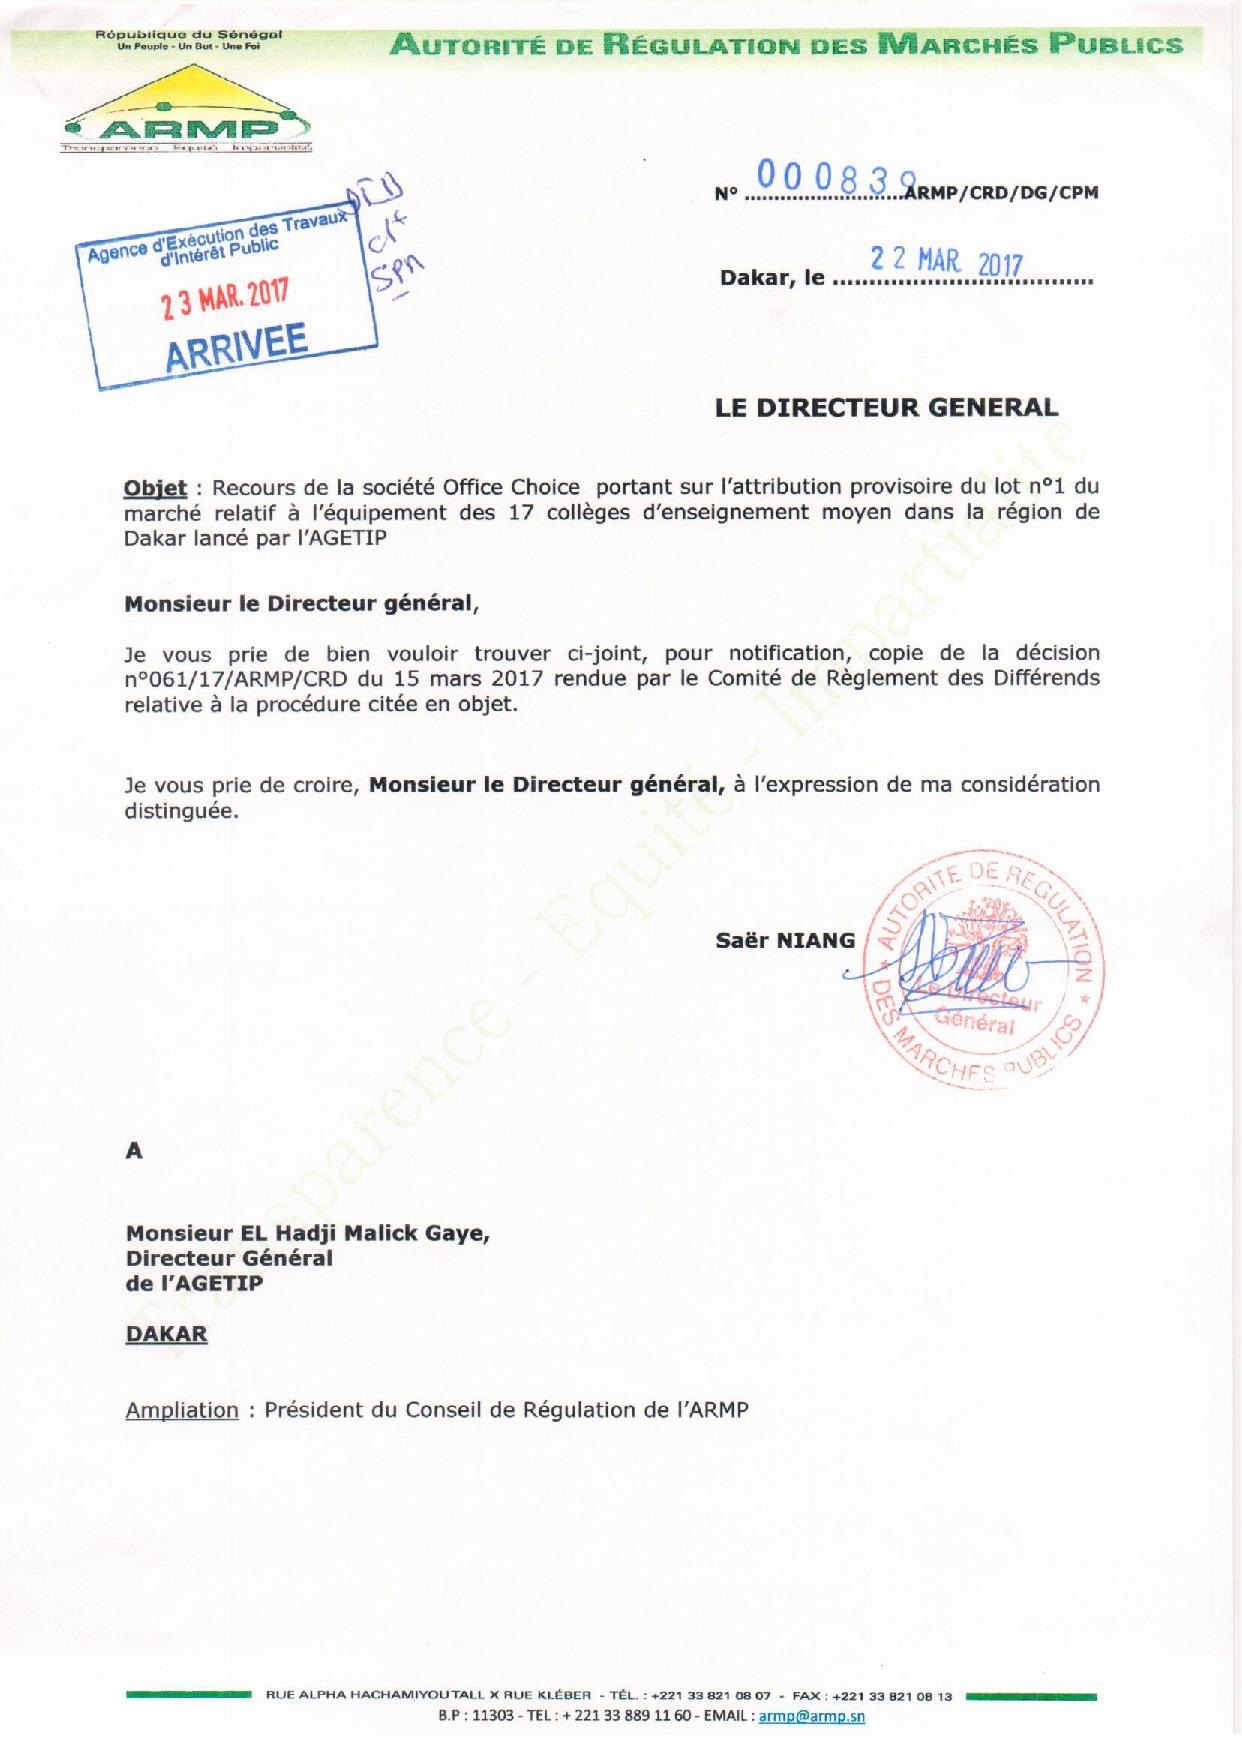 AGETIP Office Choice, L'ARMP a tranché l'appel d'offres relatif à l'équipement de 17 collèges de Dakar